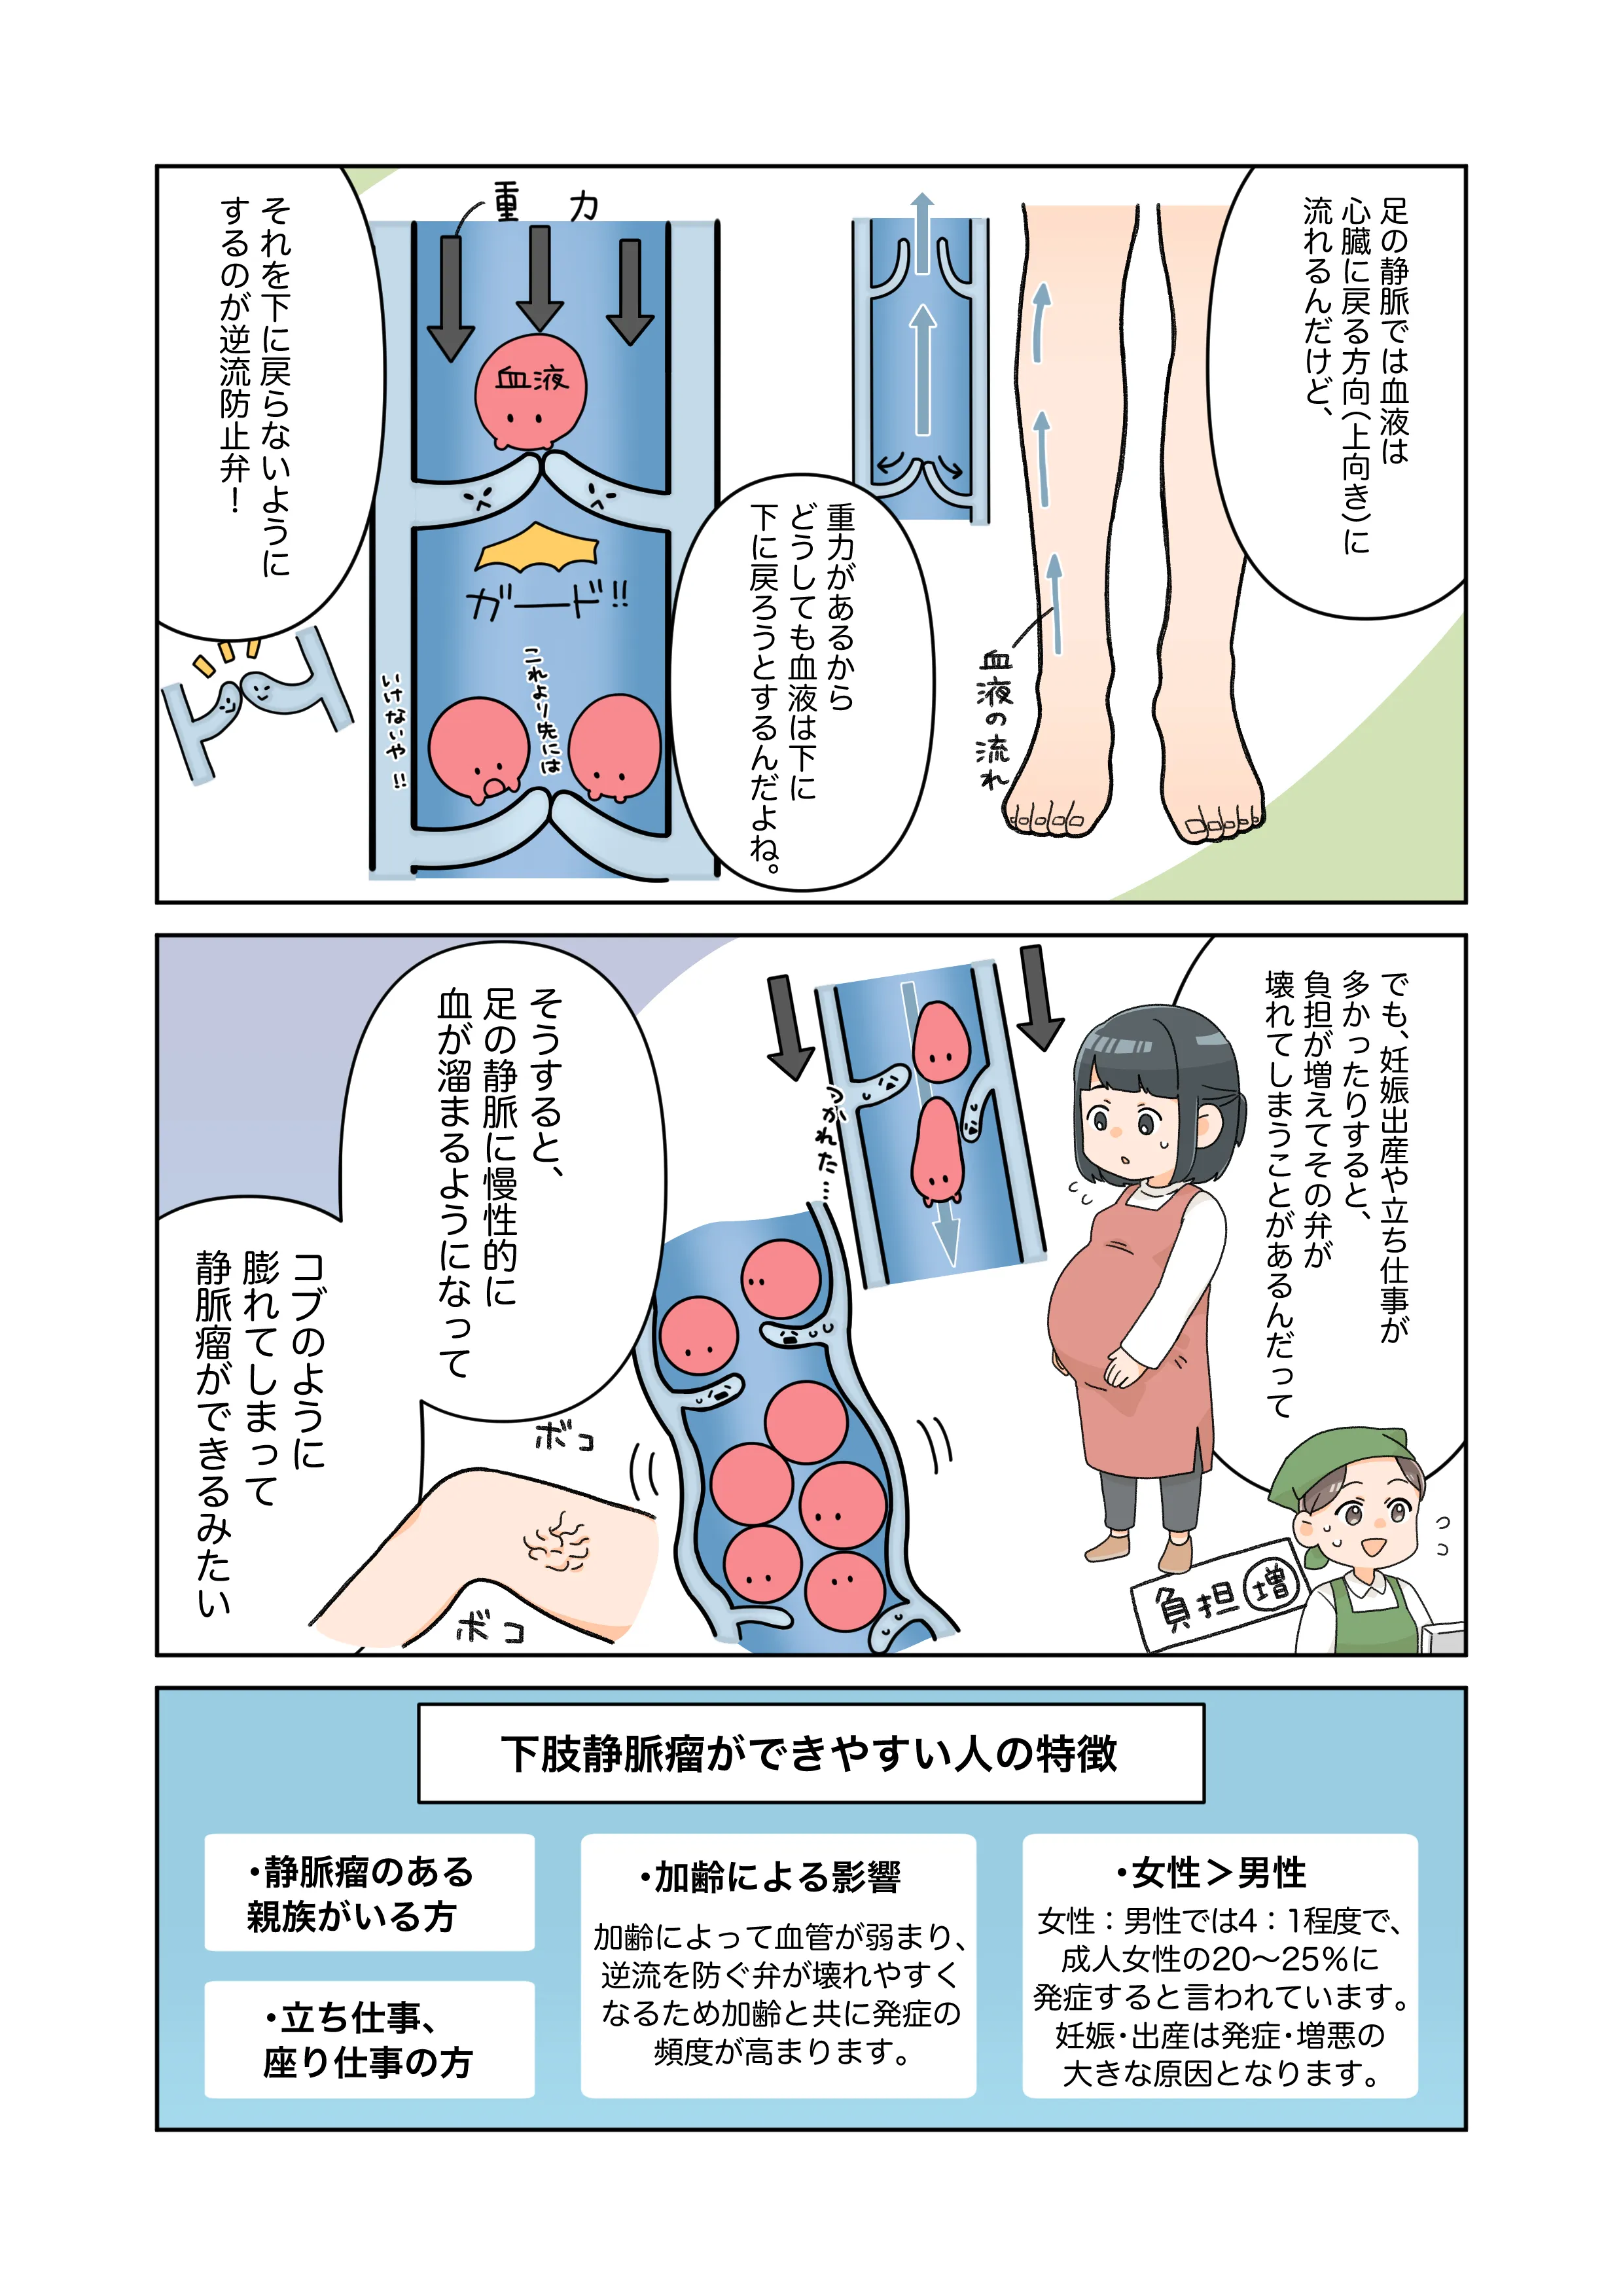 下肢静脈瘤がどうしてできるのか解説し、下肢静脈瘤ができやすい人を説明している漫画